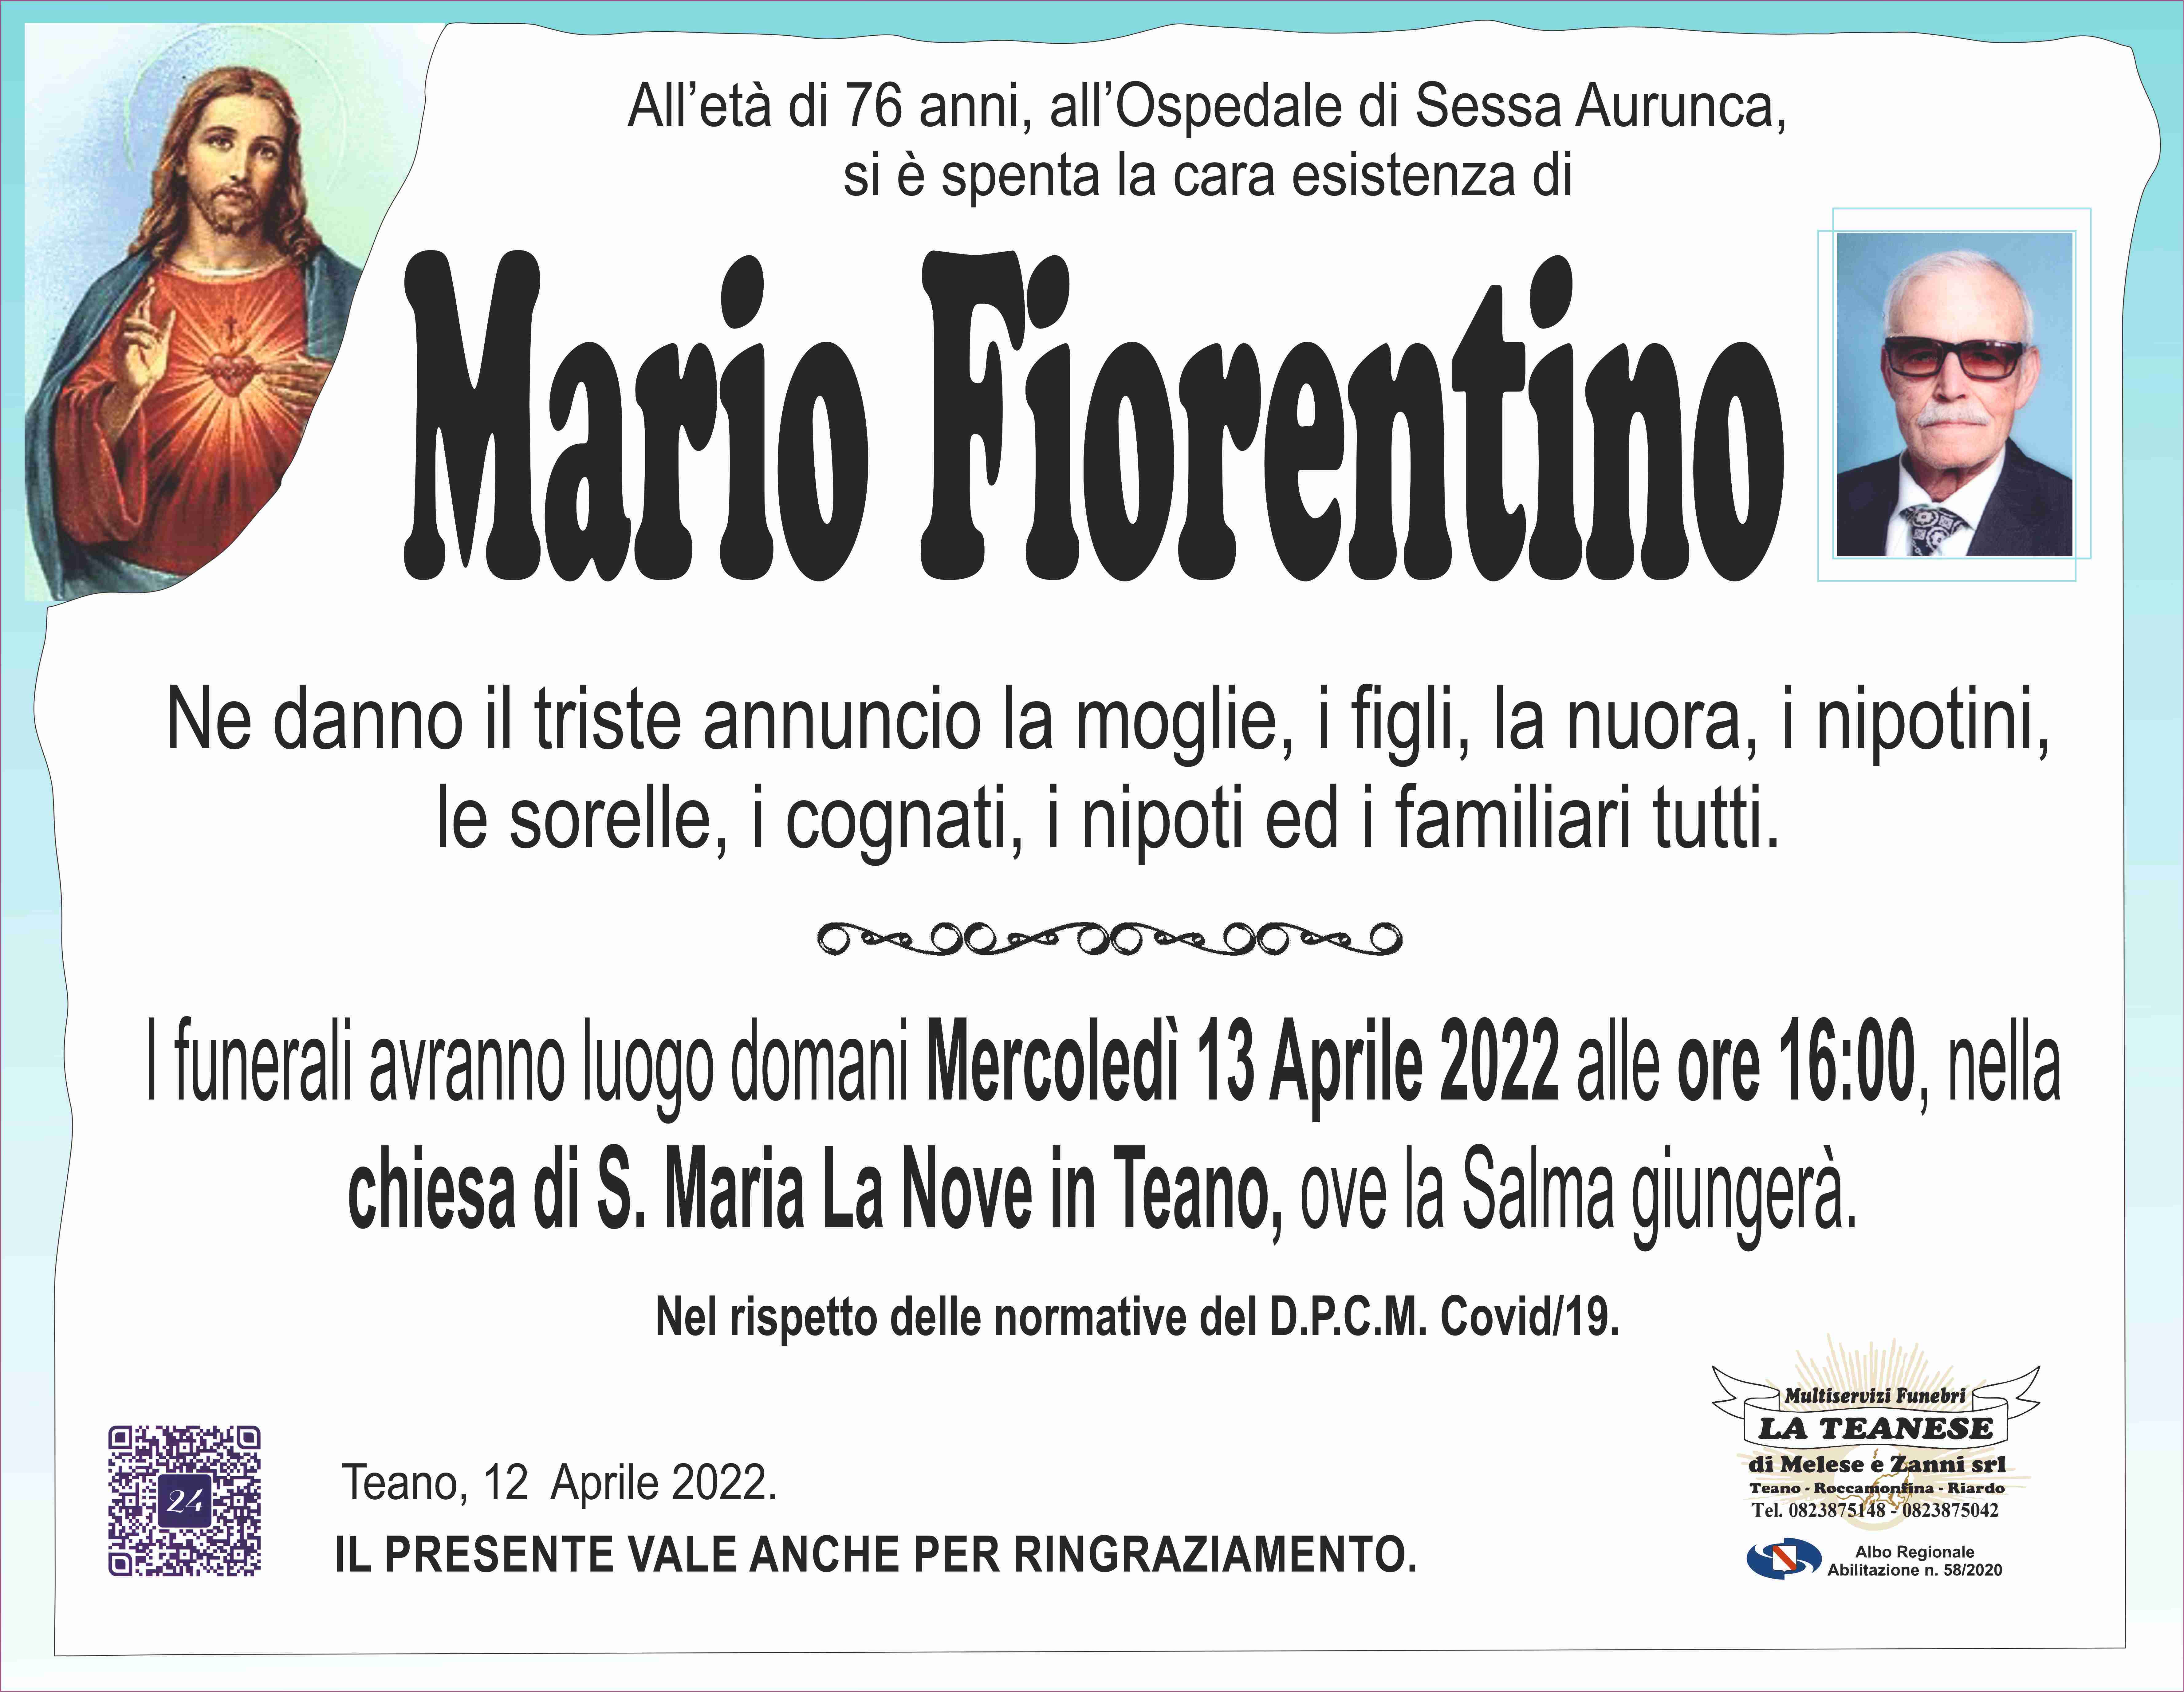 Mario Fiorentino